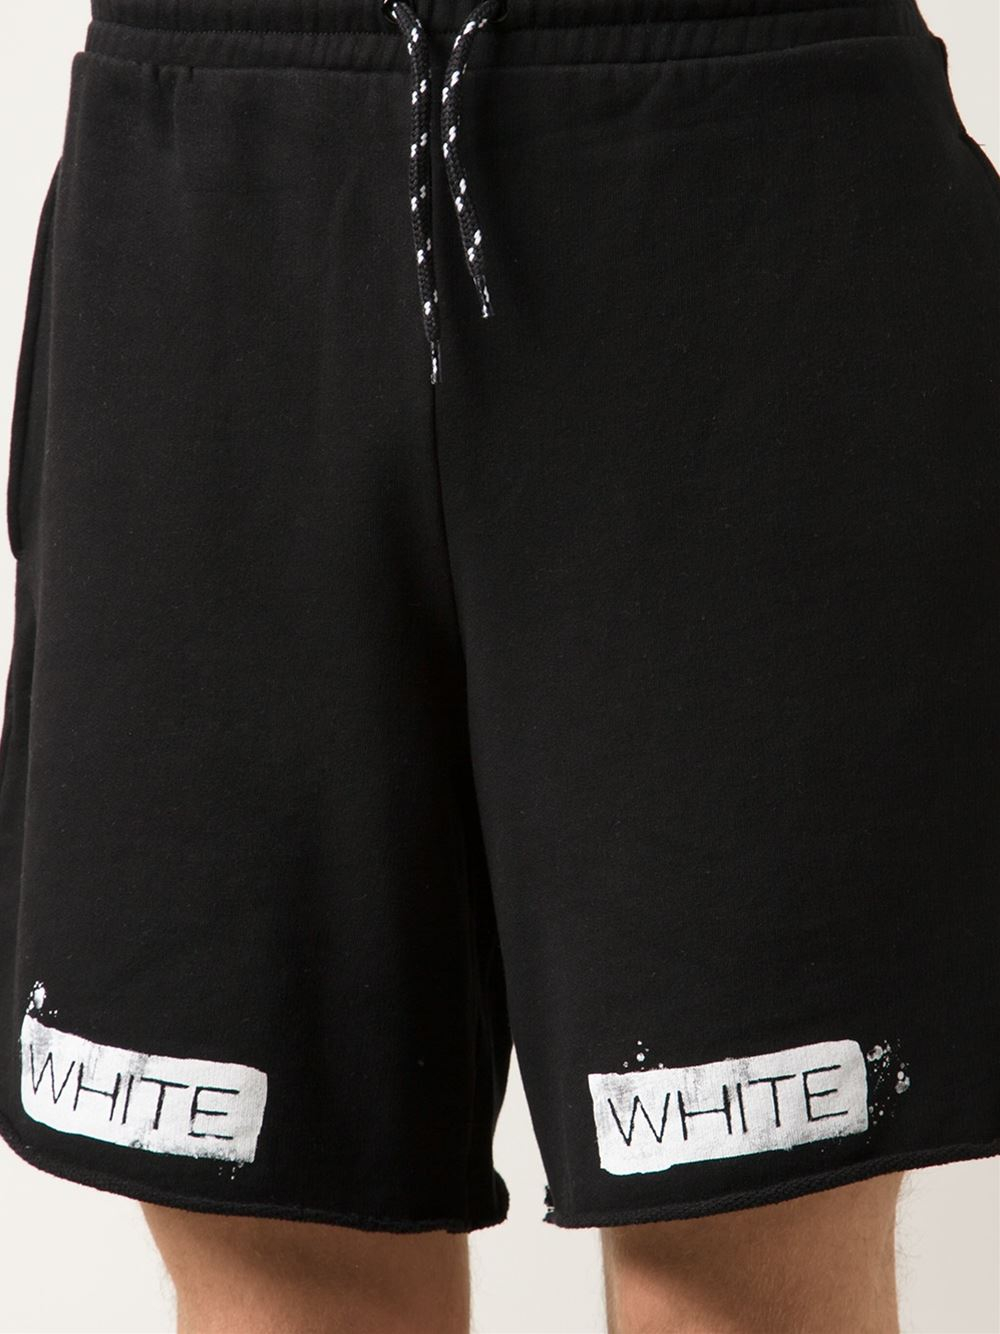 off white black shorts